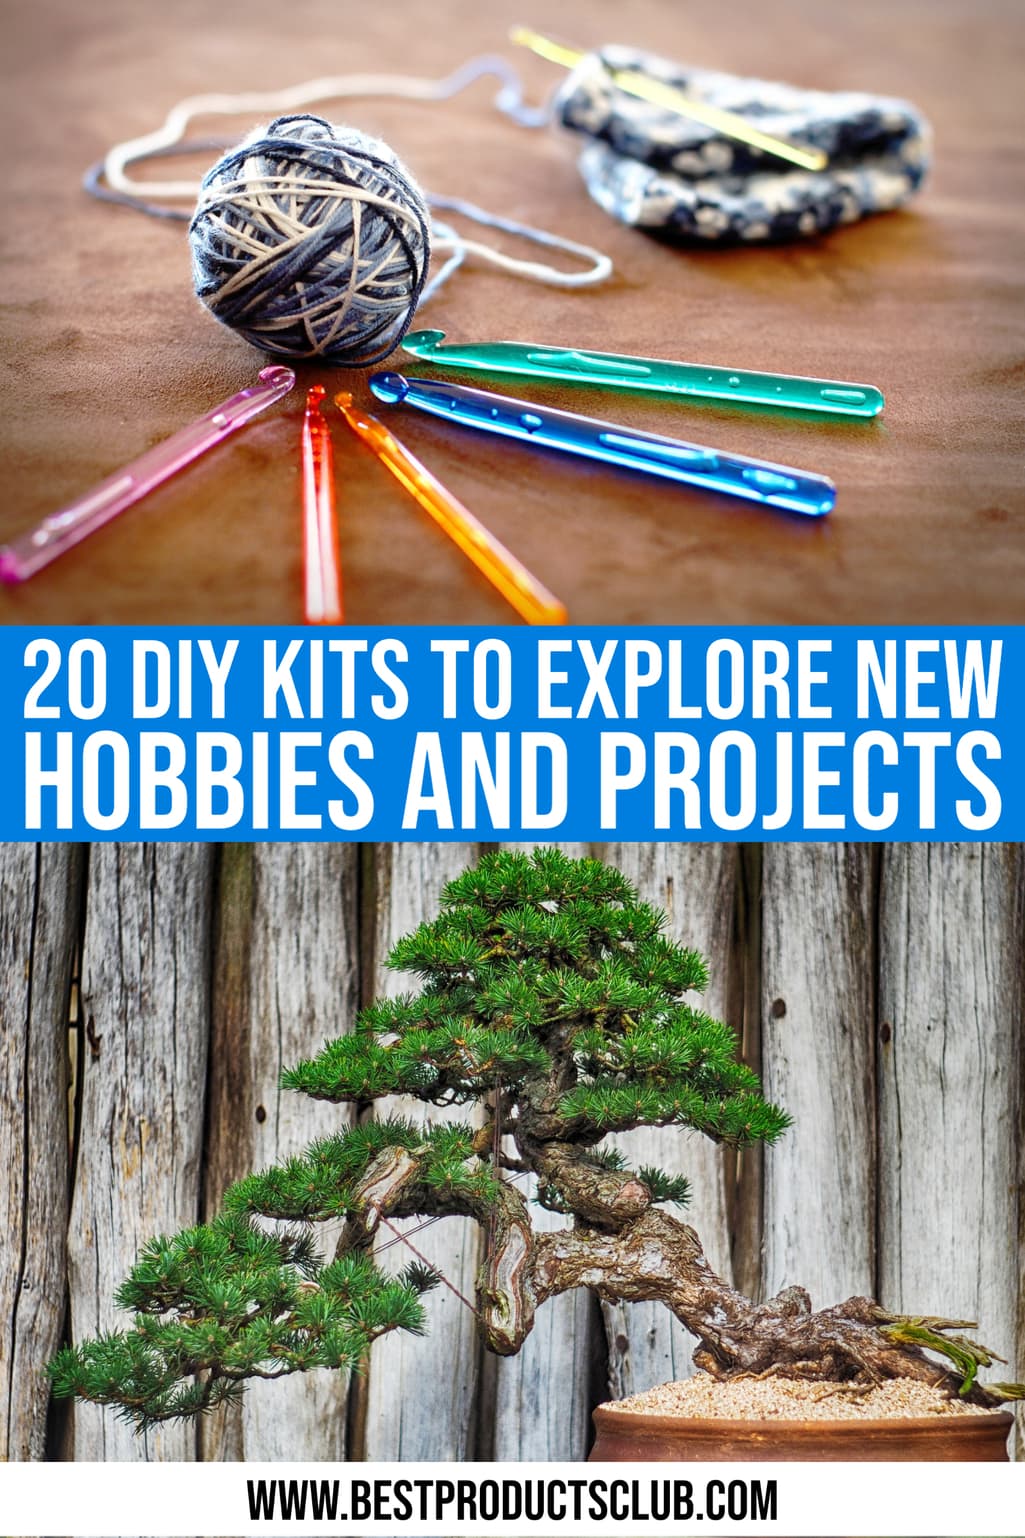 33 Starter Kits For New Hobbies